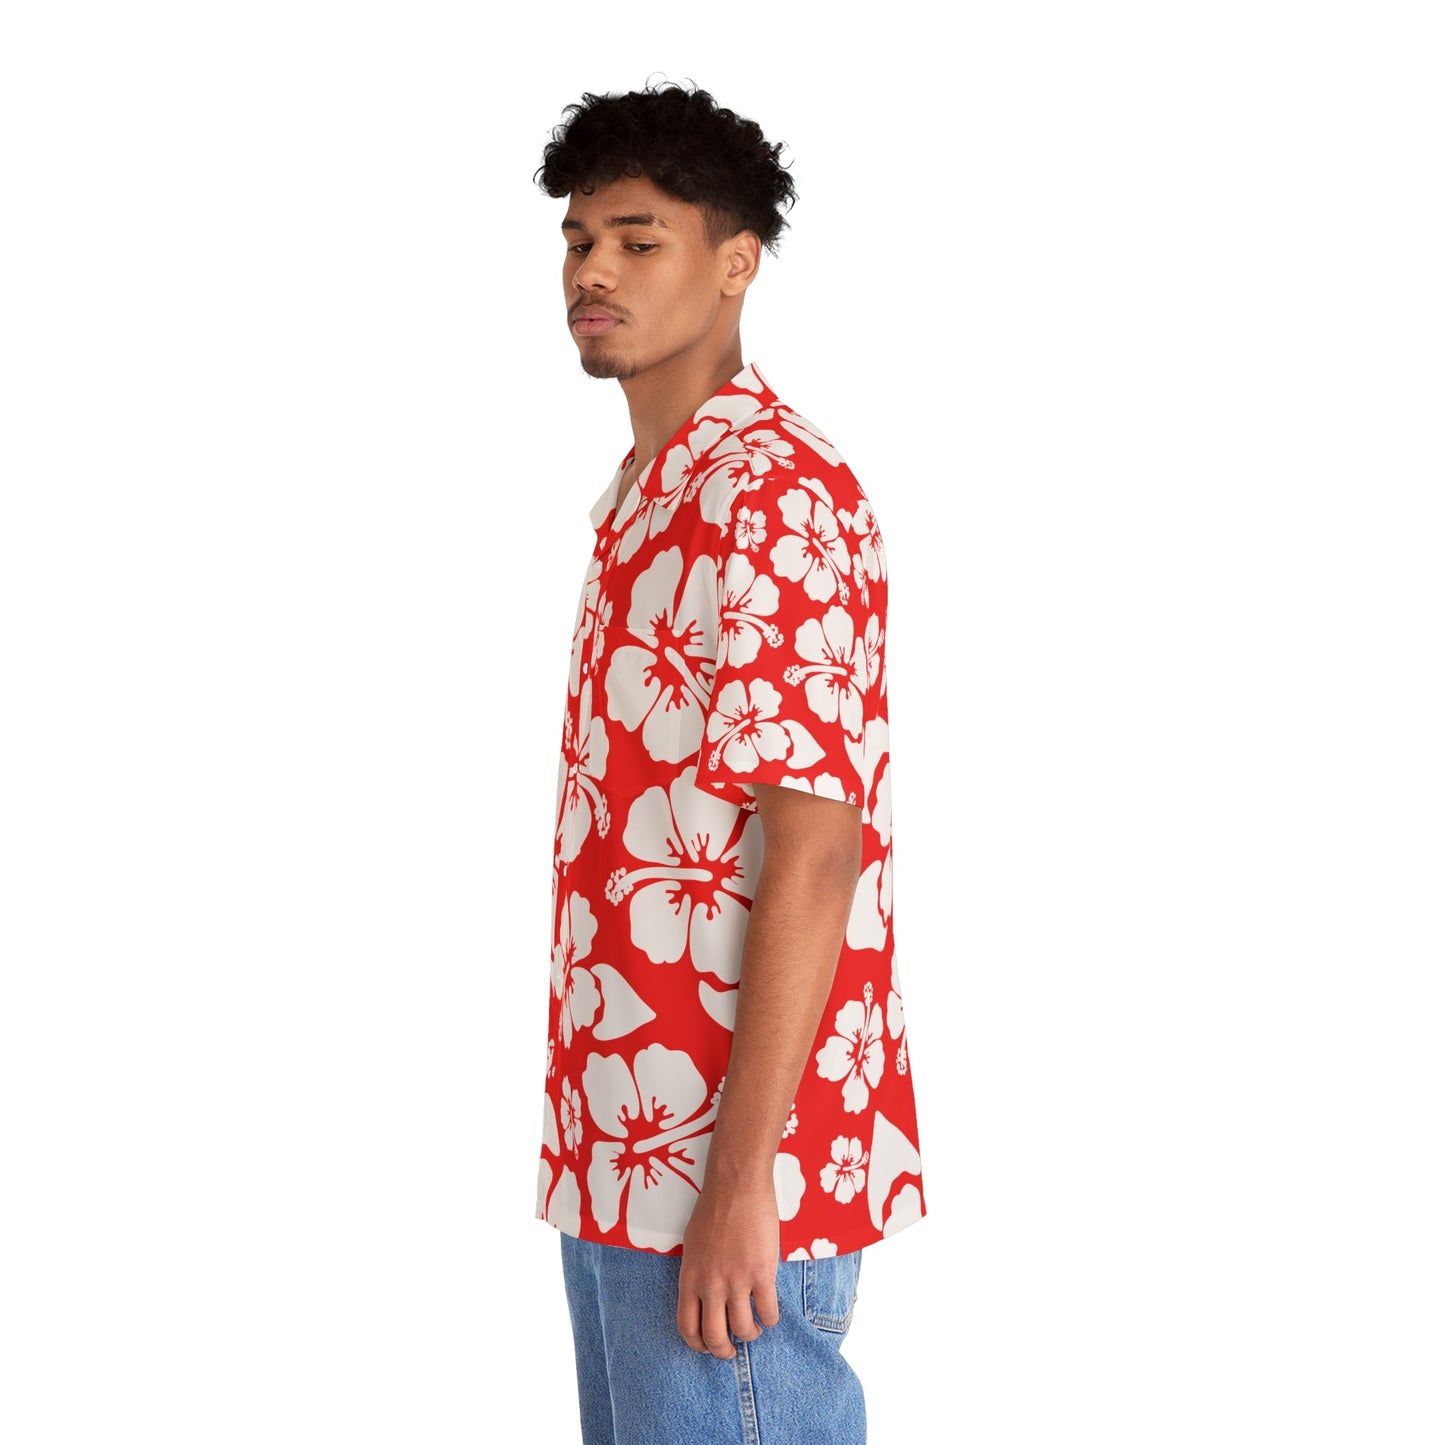 All Over Prints - Men's Hawaiian Shirt (AOP)